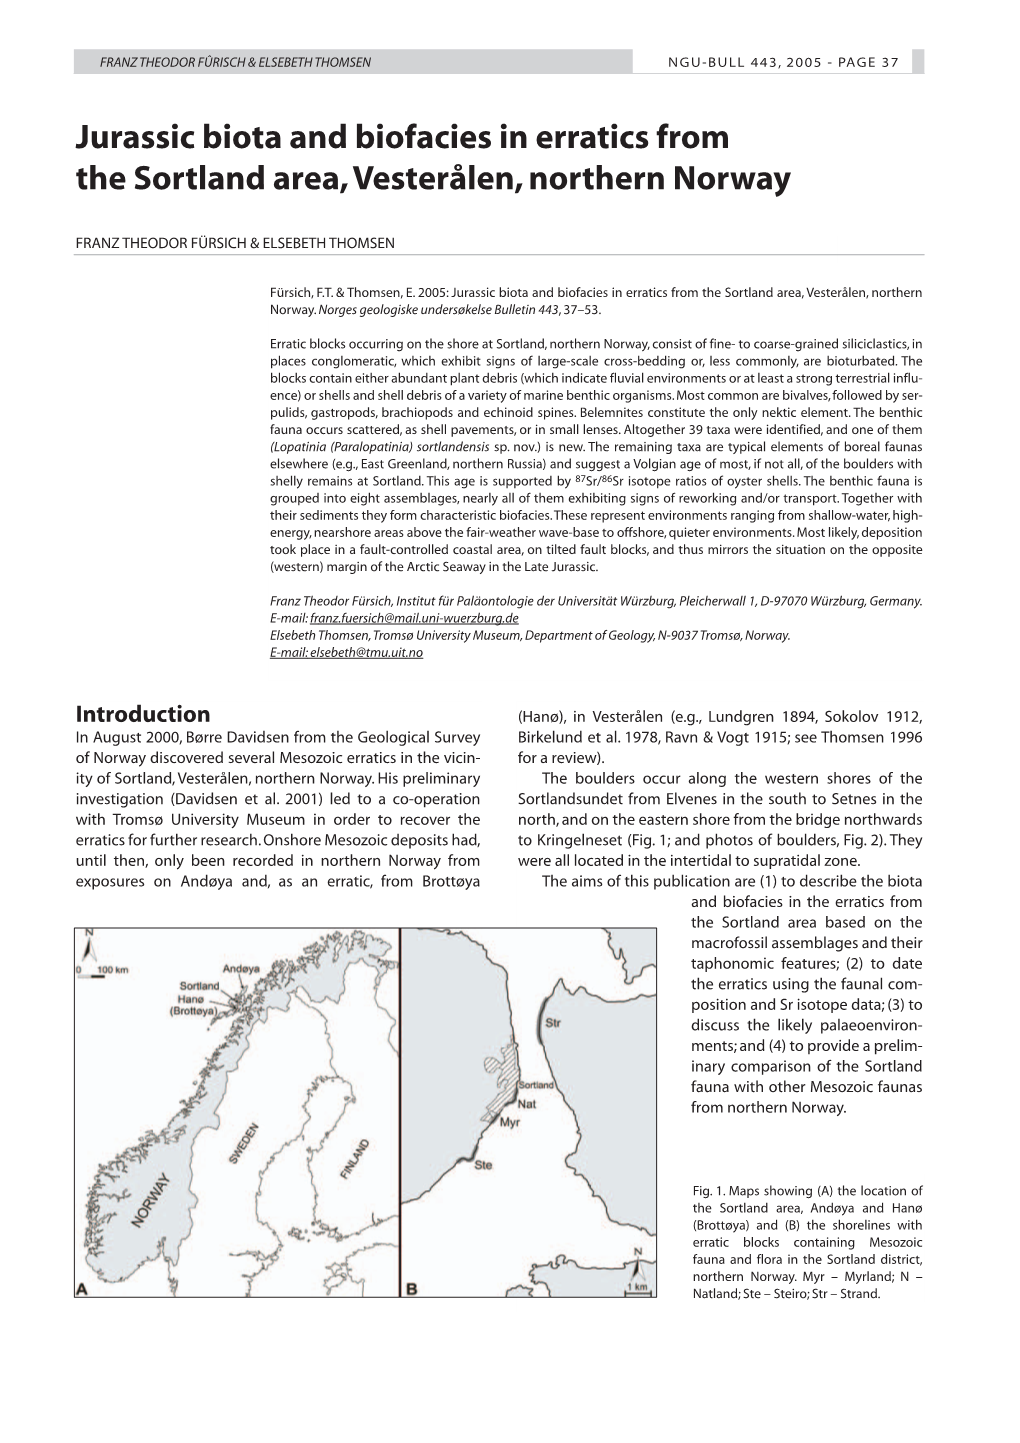 Jurassic Biota and Biofacies in Erratics from the Sortland Area, Vesterålen, Northern Norway